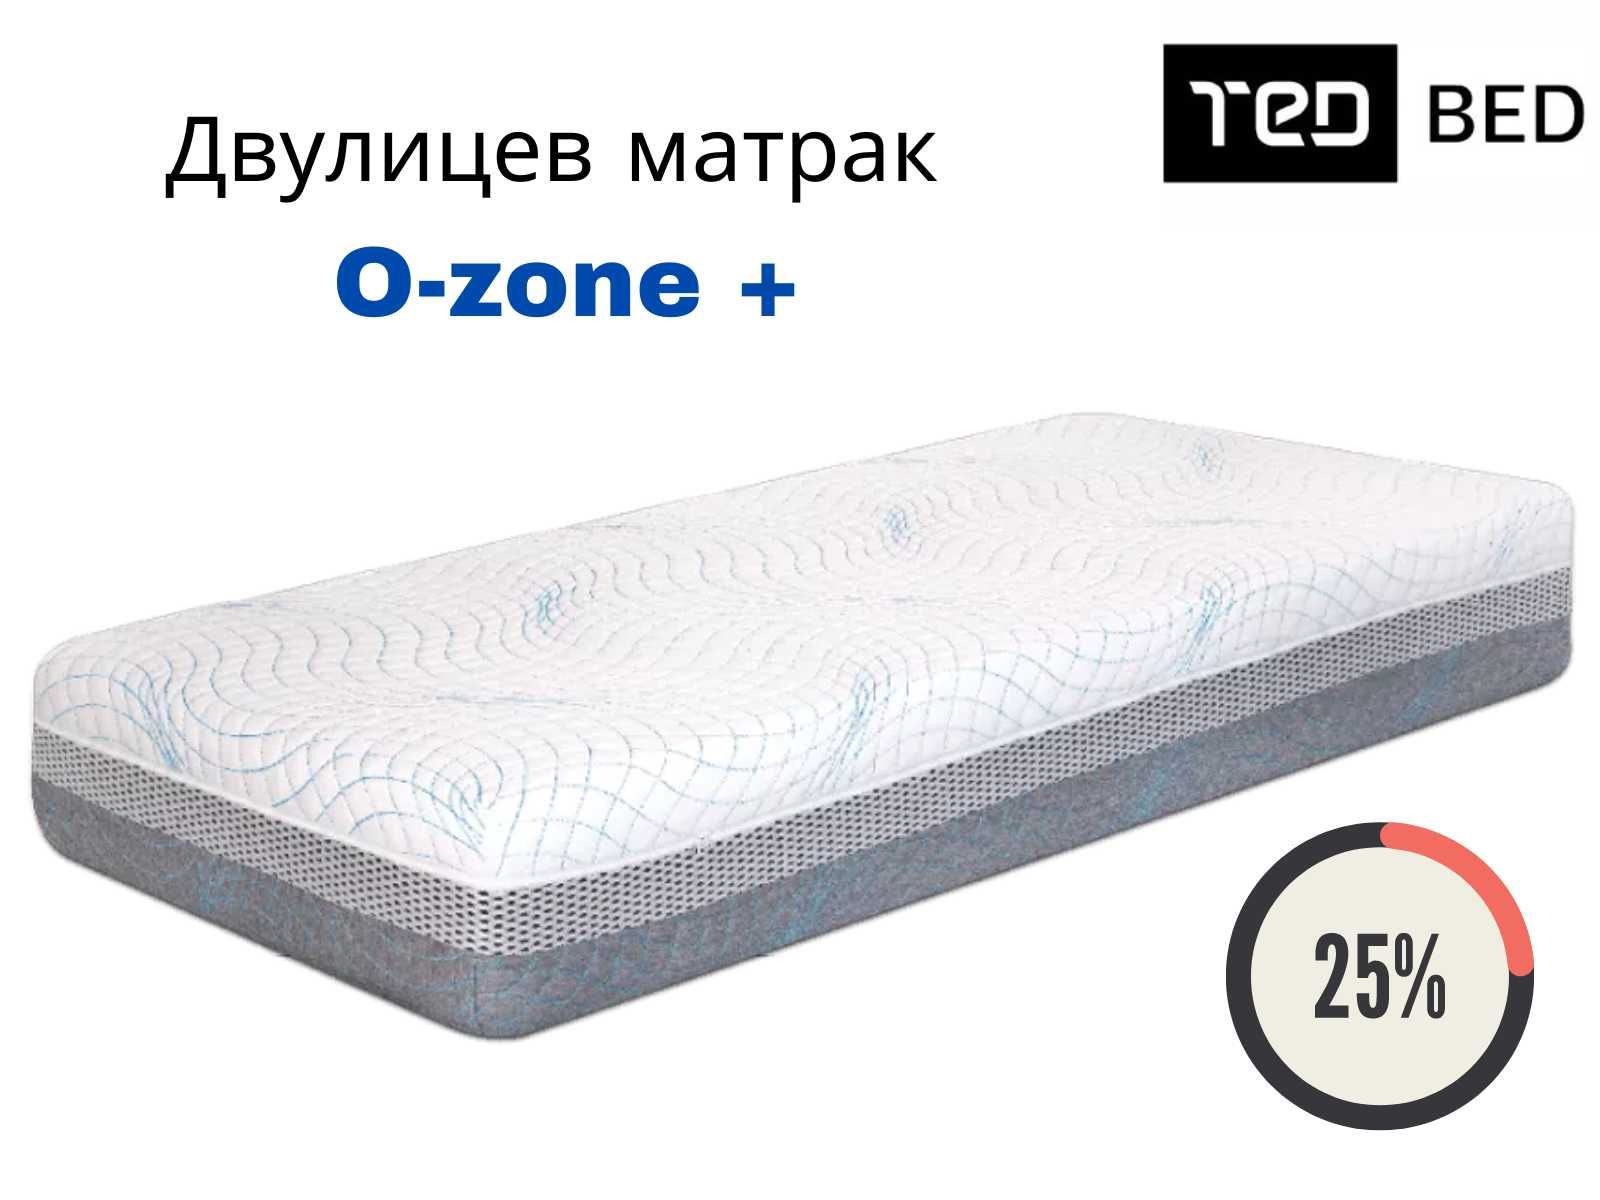 Двулицев матрак O-zone + ТЕД Sleep Genesis -25% за месец МАЙ + Подарък